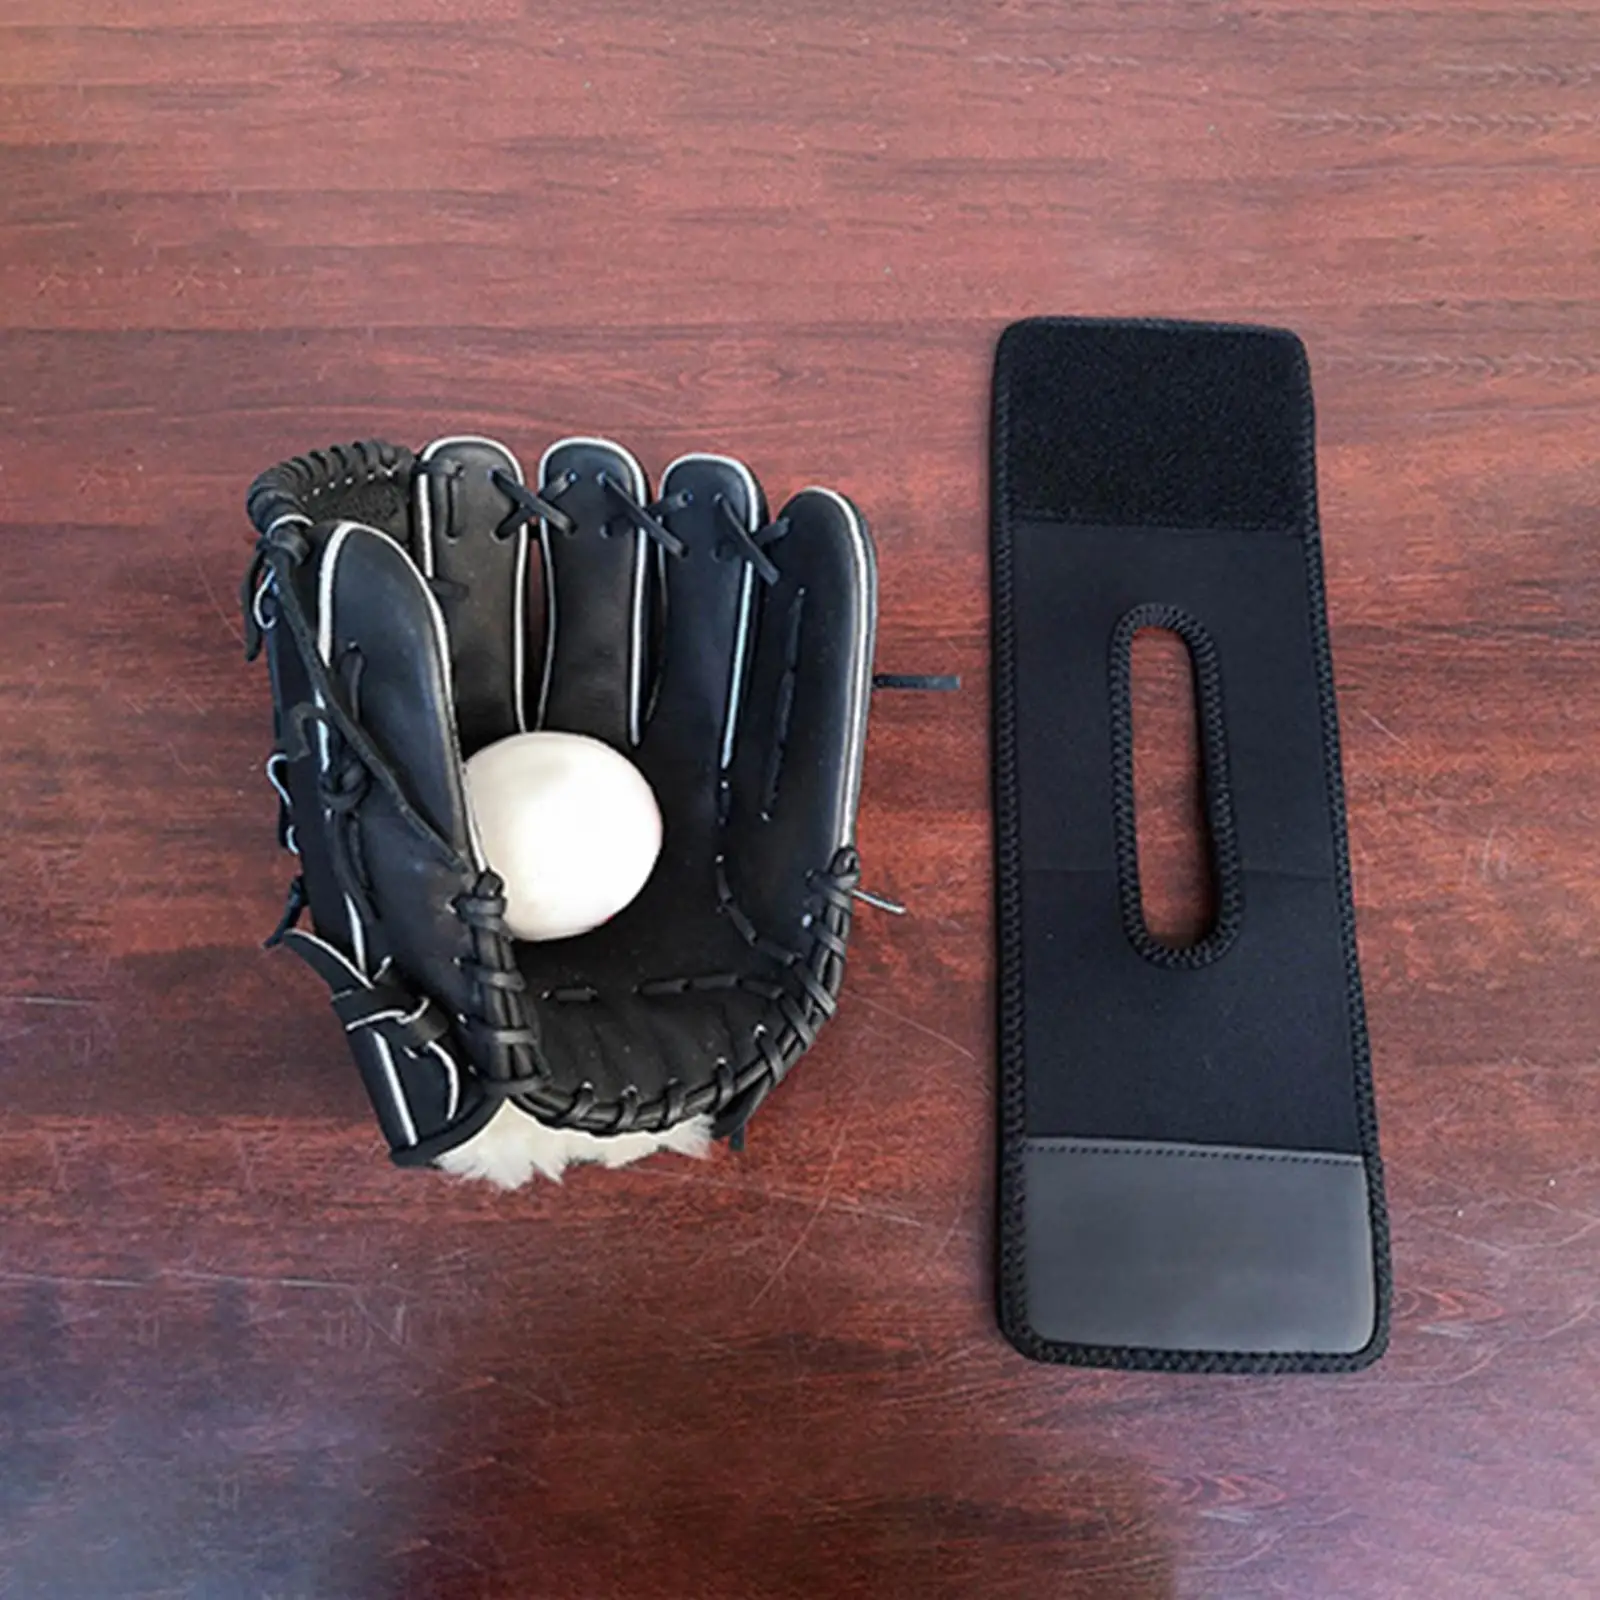 Baseball Glove Wrap Baseball and Softball Accessories Baseball Accessories for